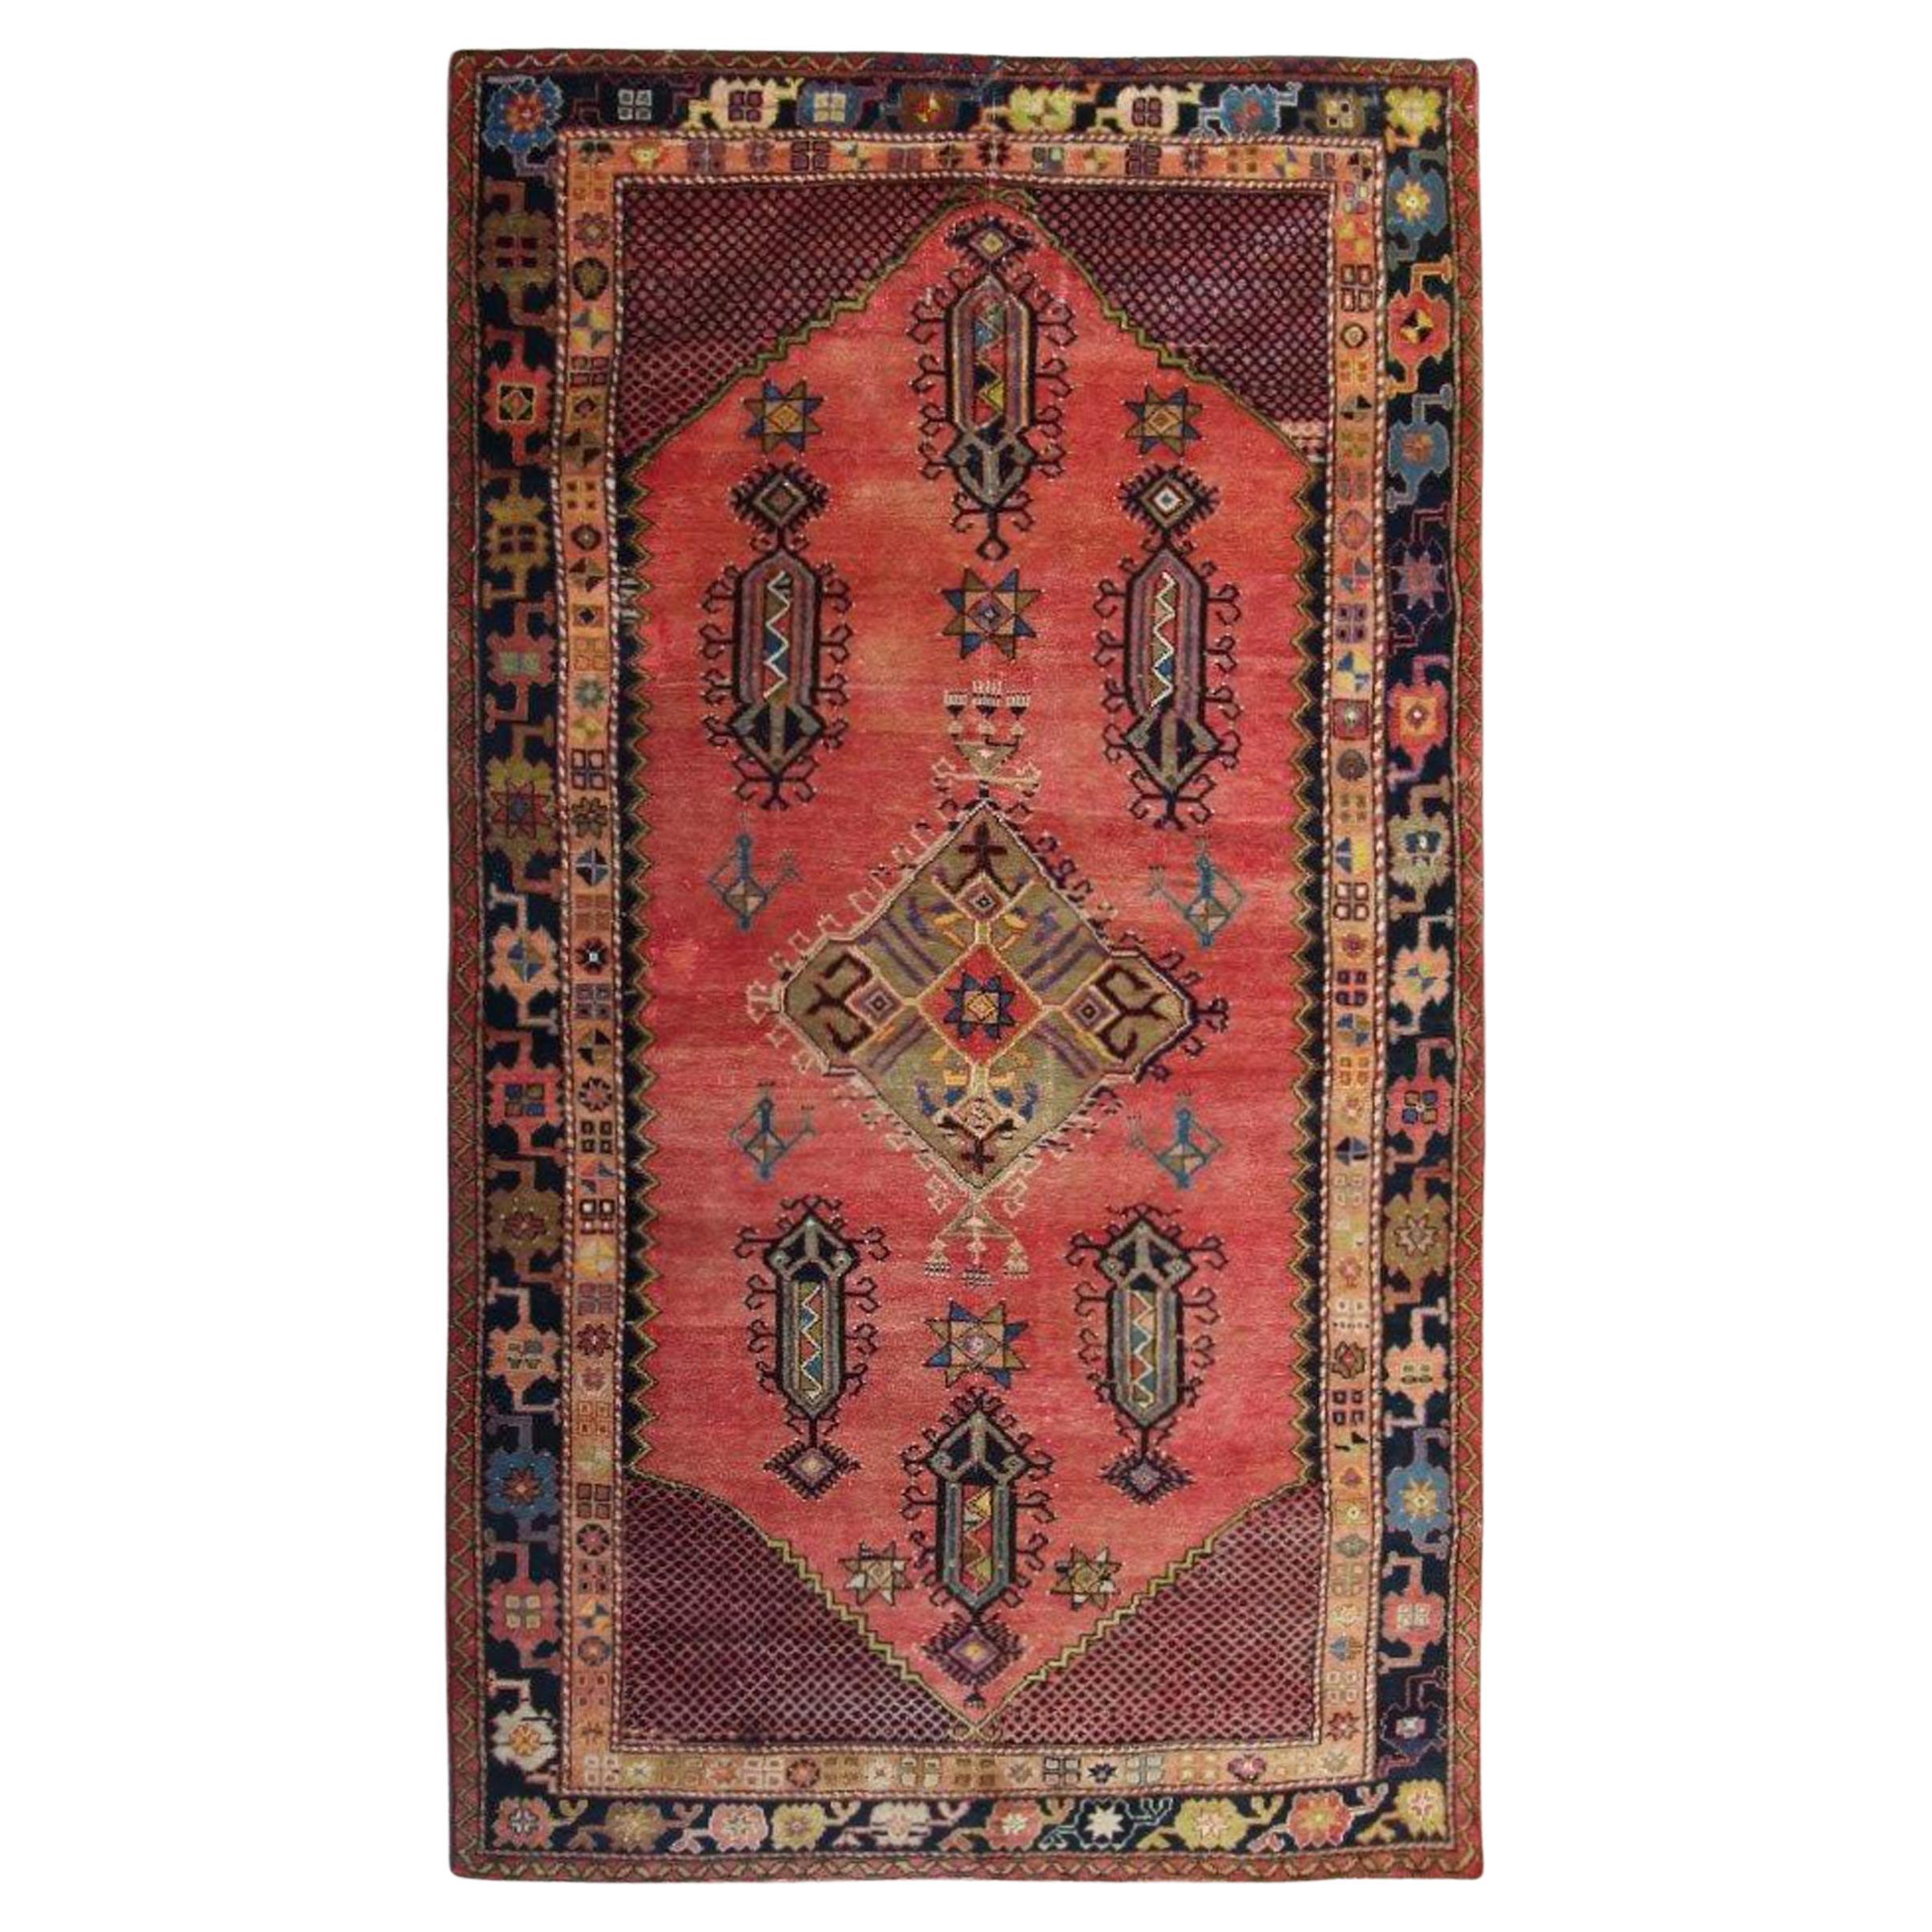 Antiker türkischer handgefertigter antiker Teppich Orientalischer rostbrauner geometrischer Teppich